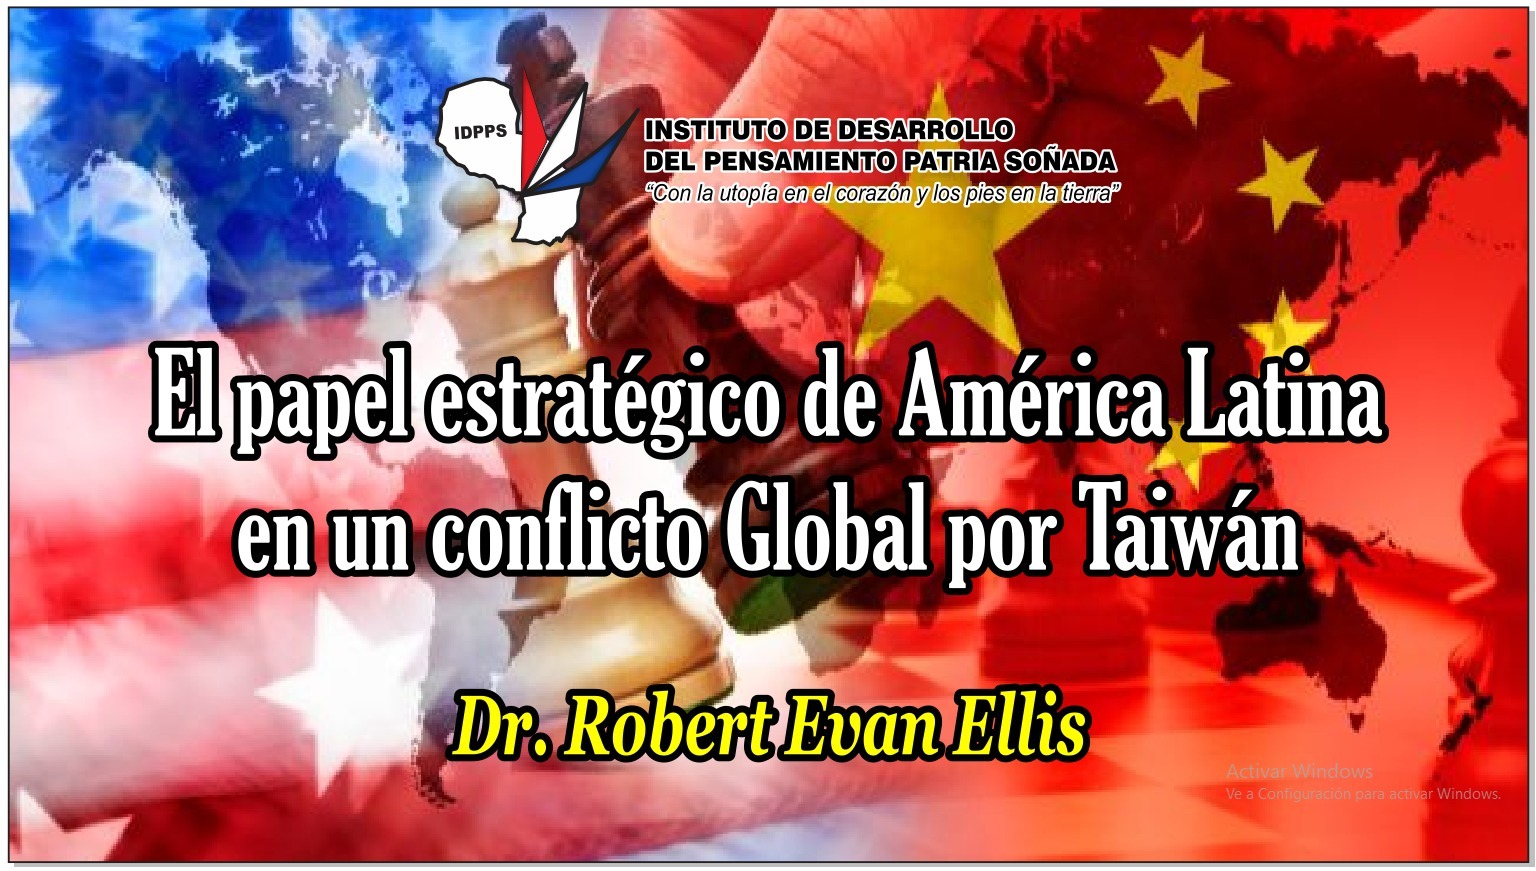 El papel estratégico de América Latina en un conflicto Global por Taiwán